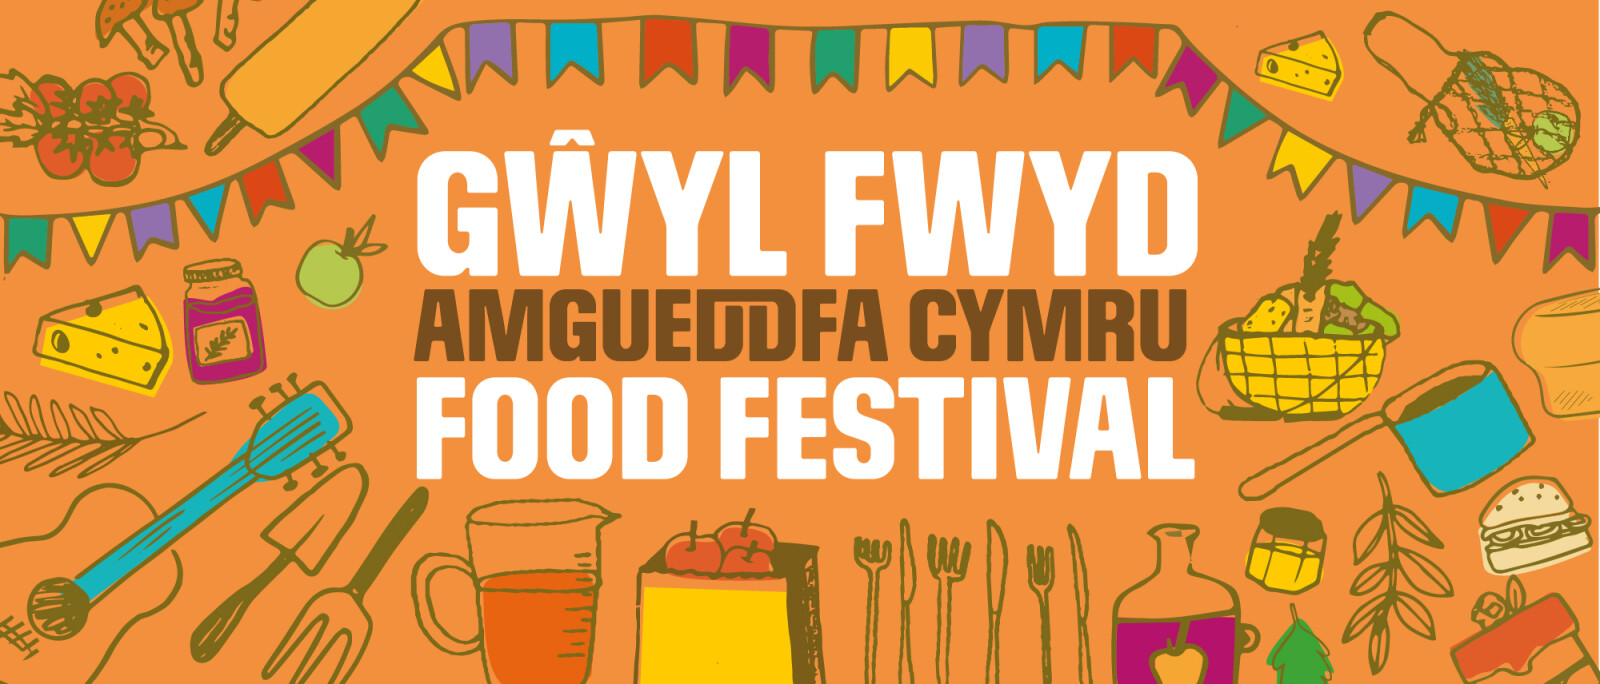 Amgueddfa Cymru Food Festival